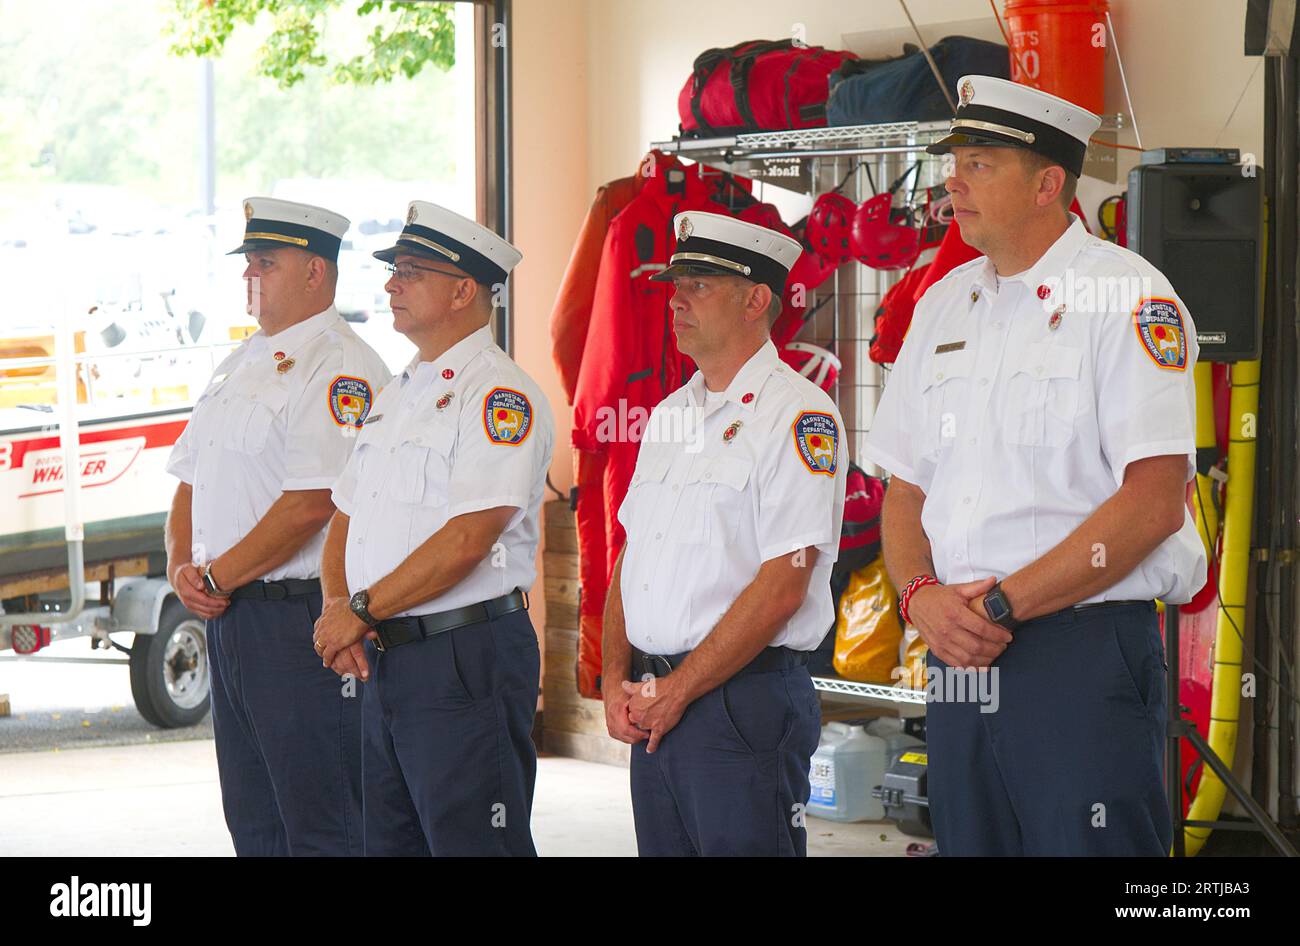 911 cérémonie de commémoration à Barnstable, ma Fire Headquarters à Cape Cod, États-Unis. Officiers du service d'incendie du village Barnstable à l'attention Banque D'Images